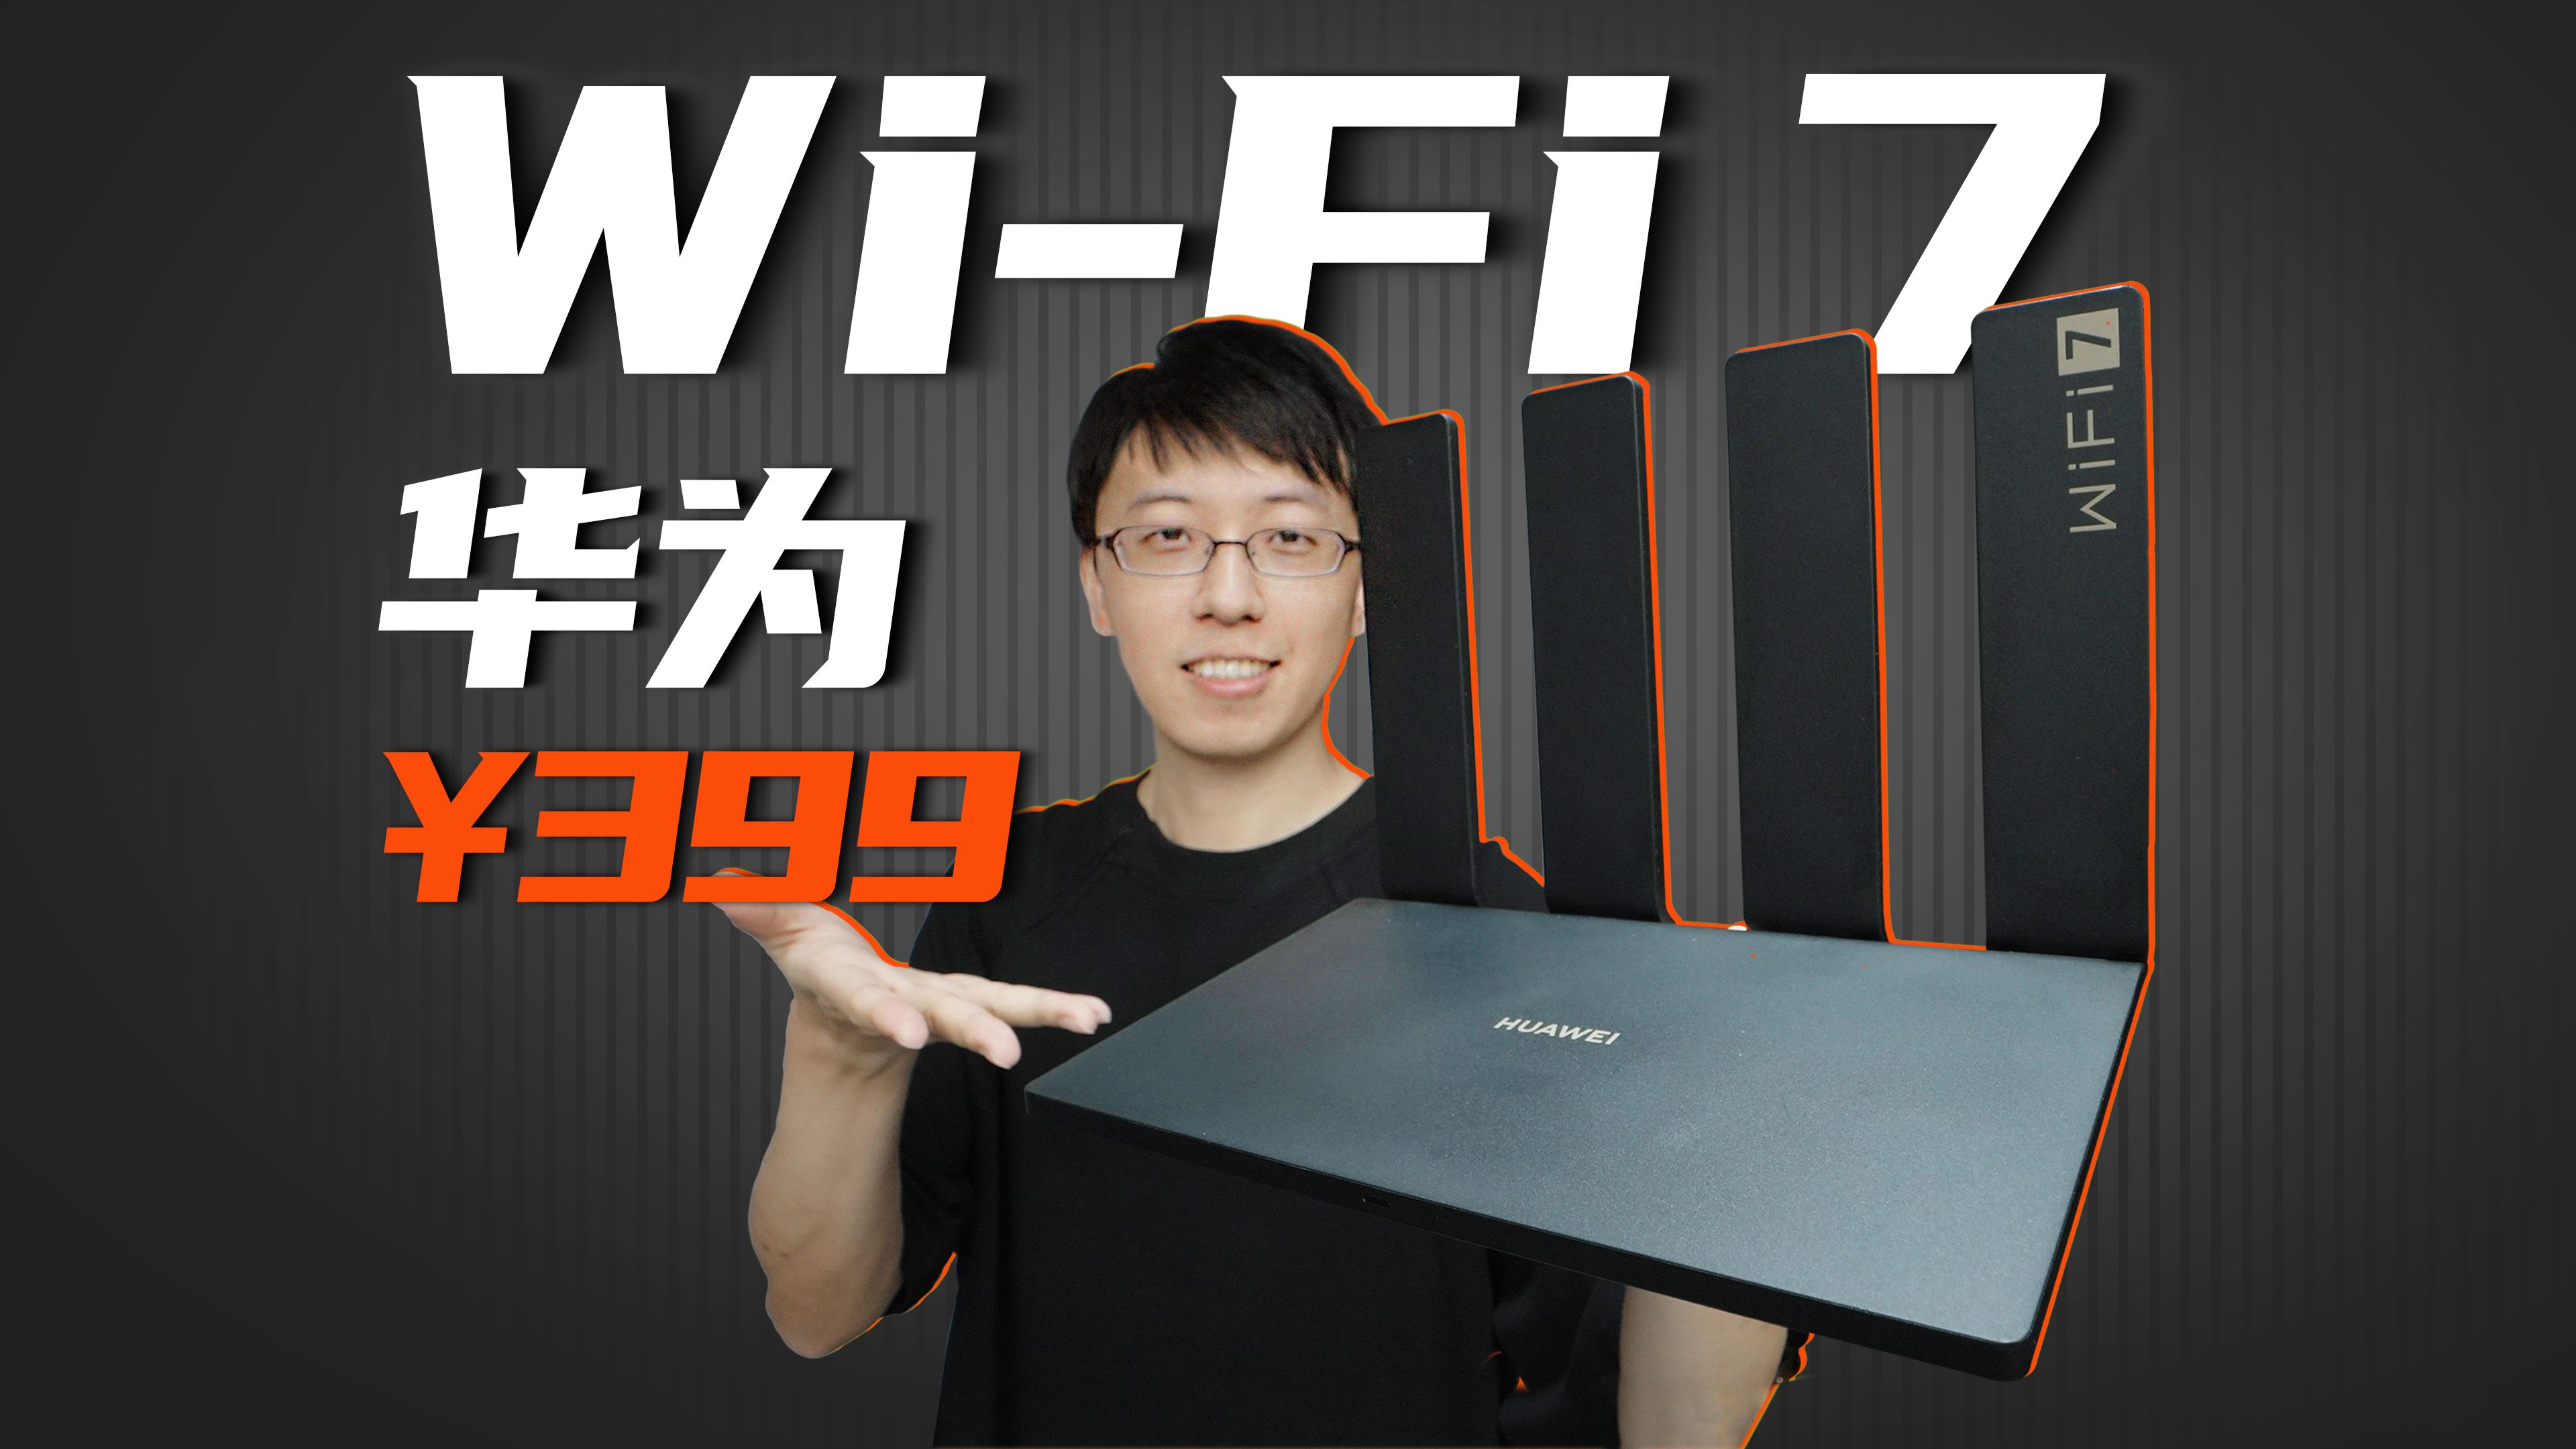 华为发布首款WiFi7路由器!￥399能玩出什么花?